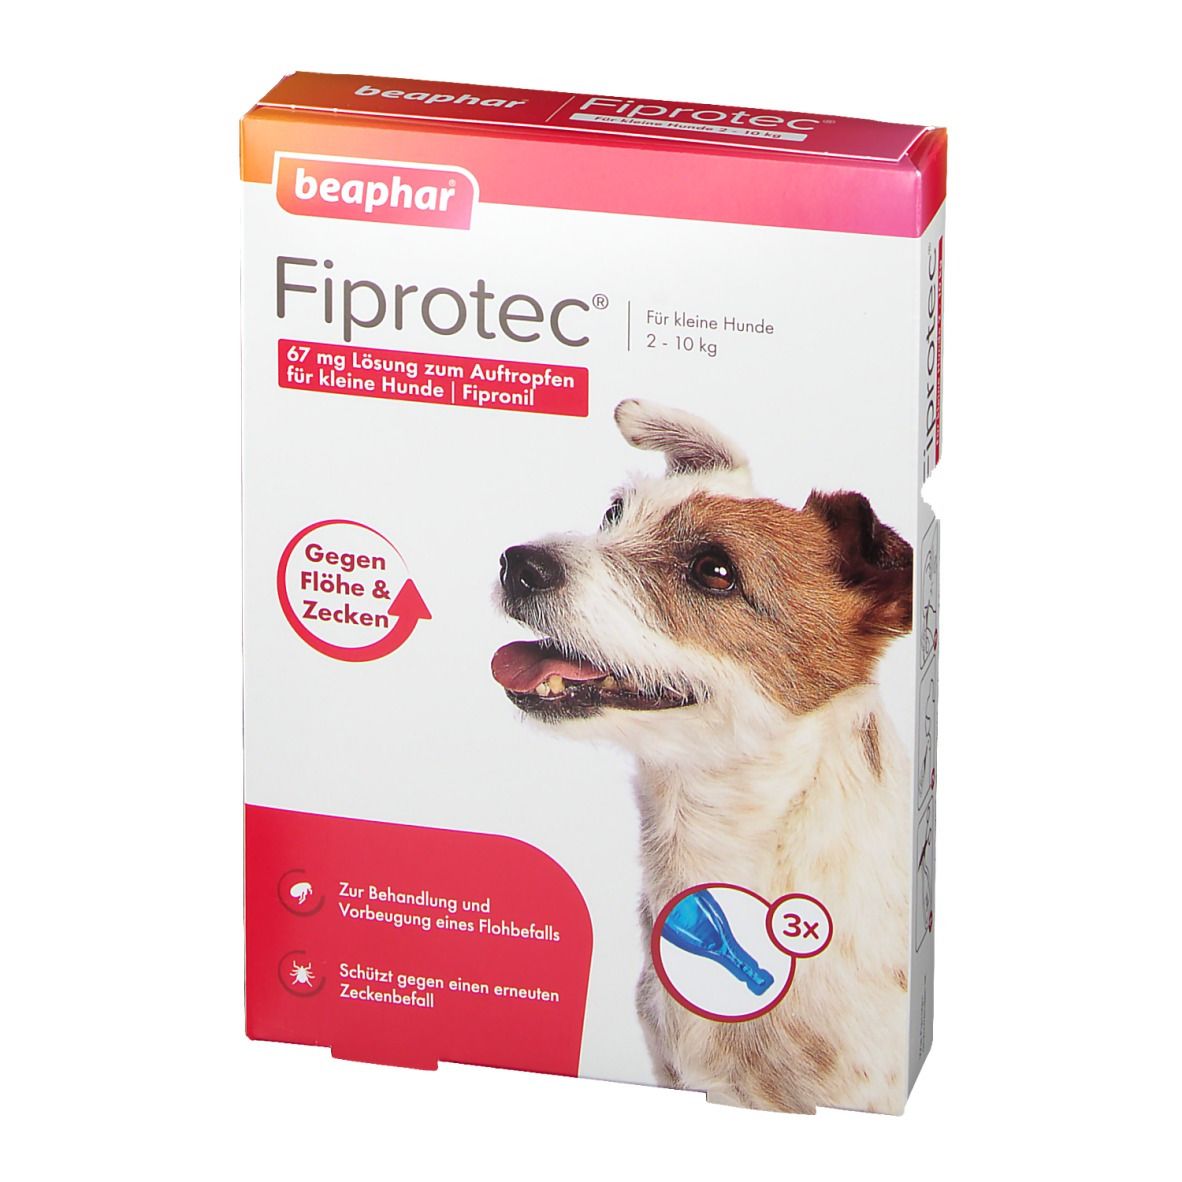 Fiprotec® 67 mg Lösung zum Auftropfen für kleine Hunde